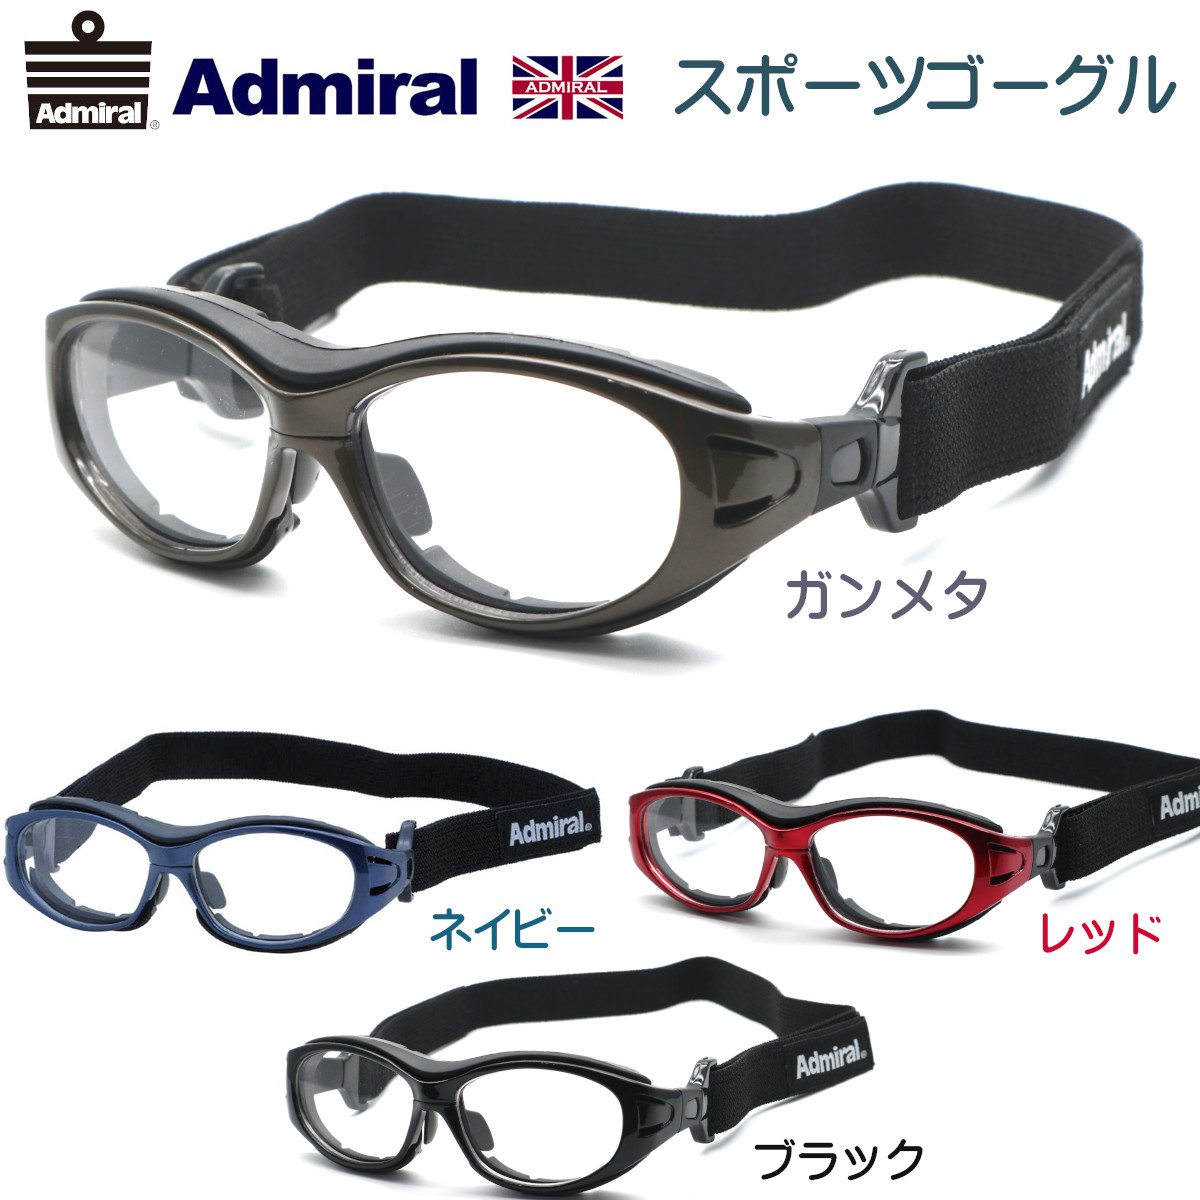 Admiral アドミラル Adg 02 51サイズ 全４カラー 送料無料 度付又は度無しレンズ込 正規品 子供用スポーツアイウエア